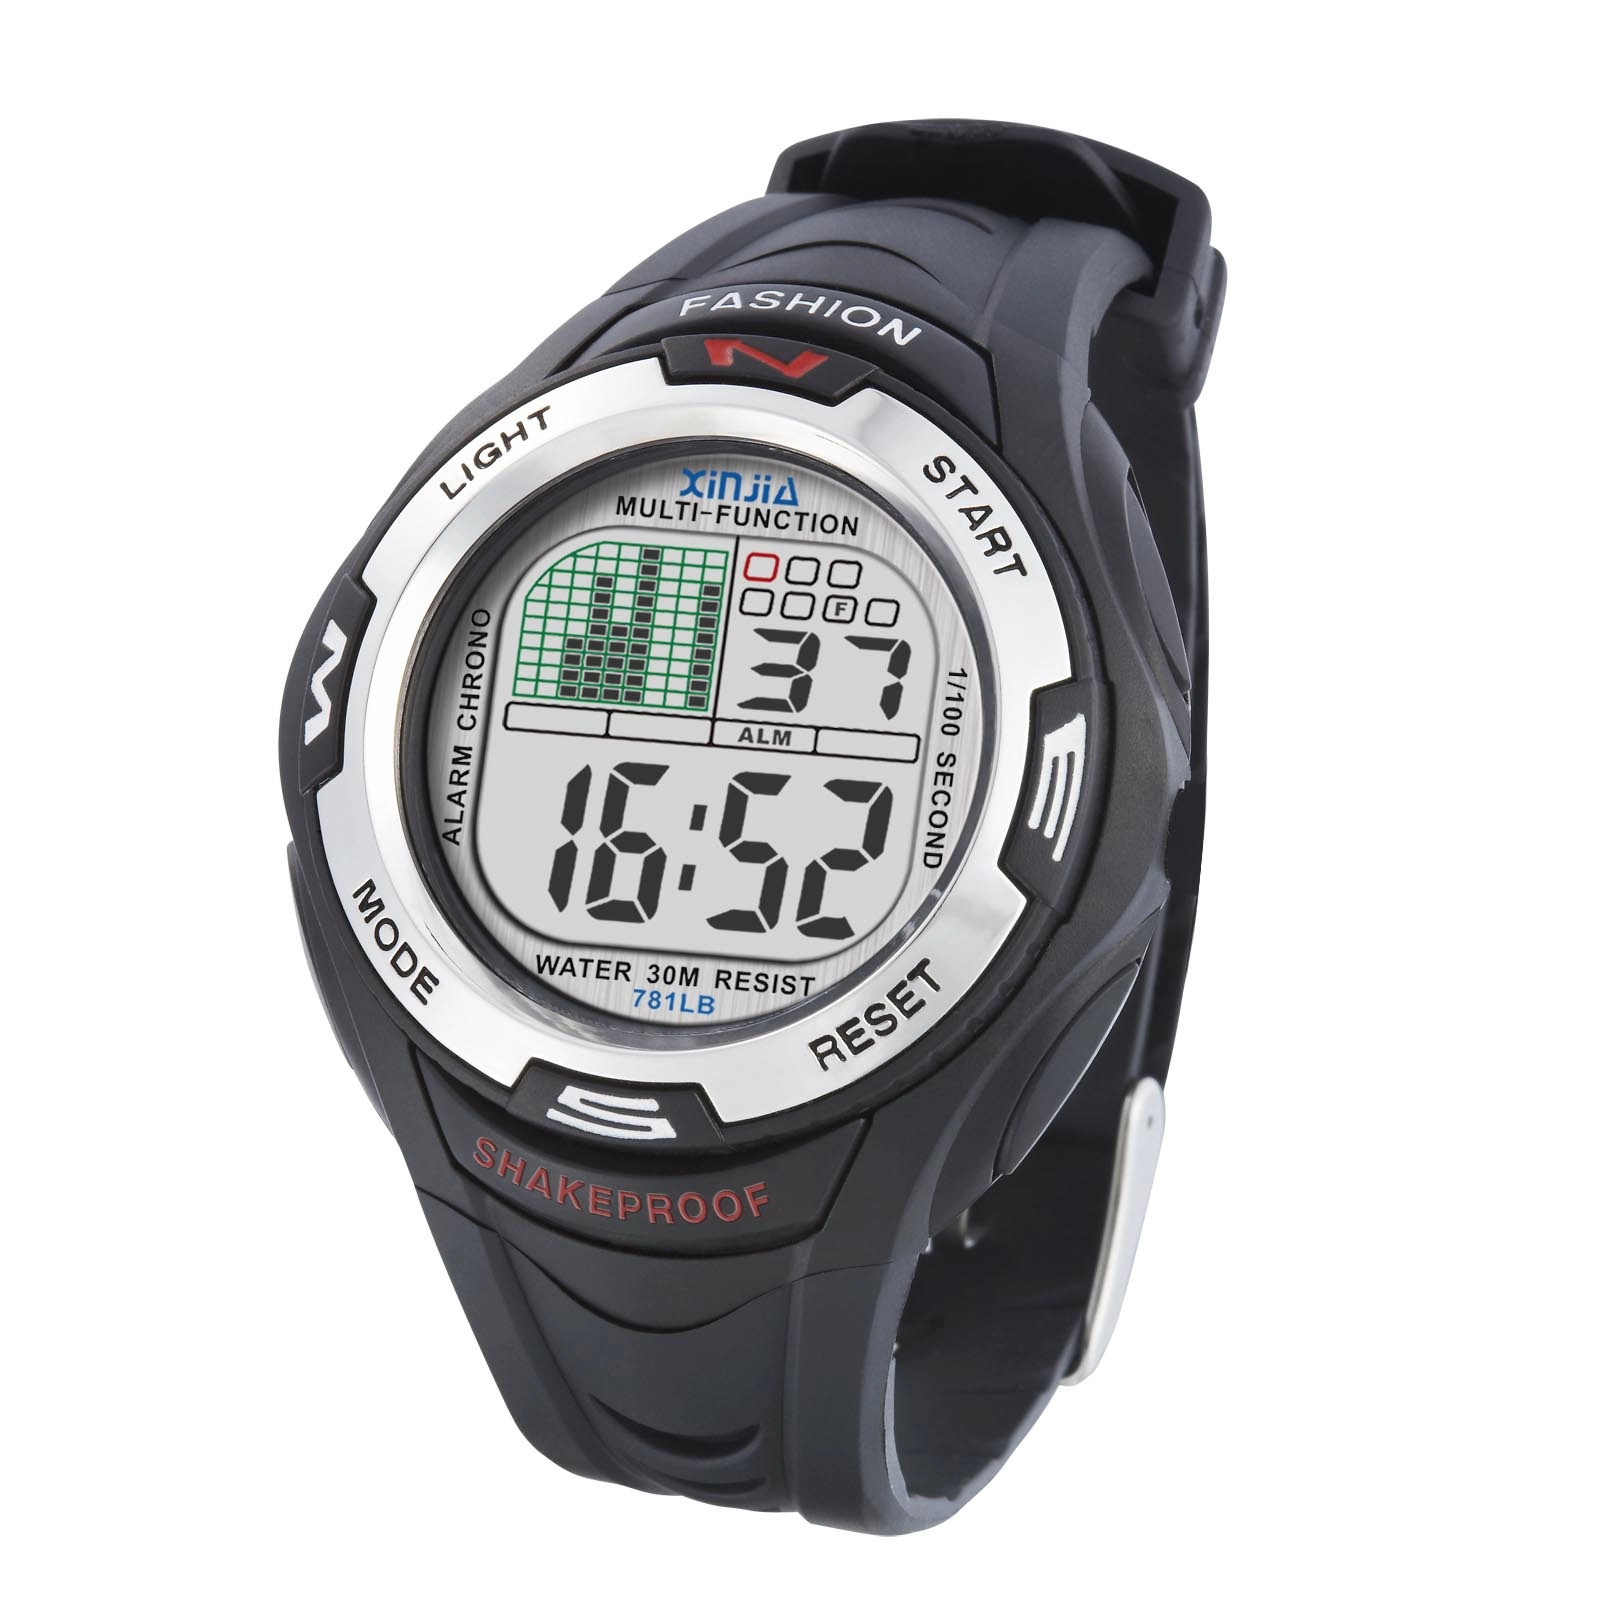 Alloy Watch Bezel Flashing Light Water Resistant Sport Wrist Watch